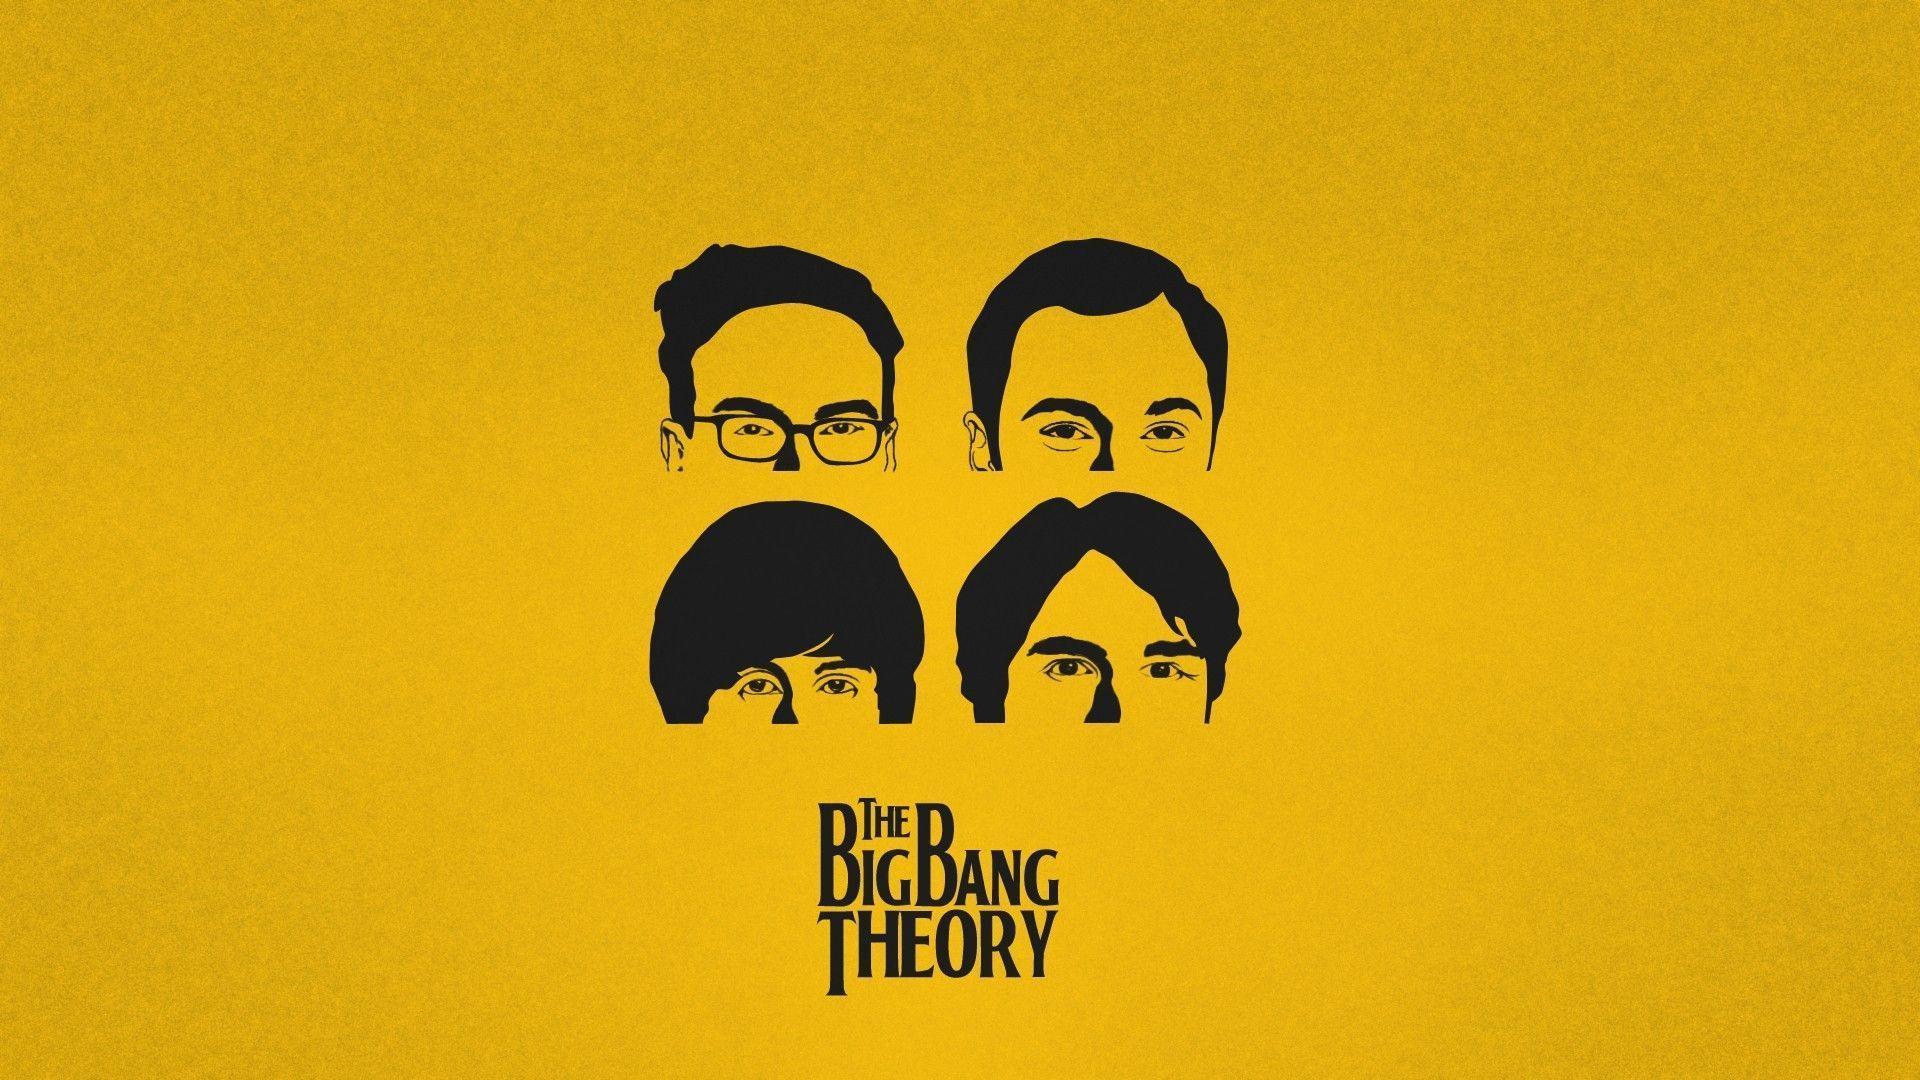 Big Bang Theory Wallpapers Top Free Big Bang Theory